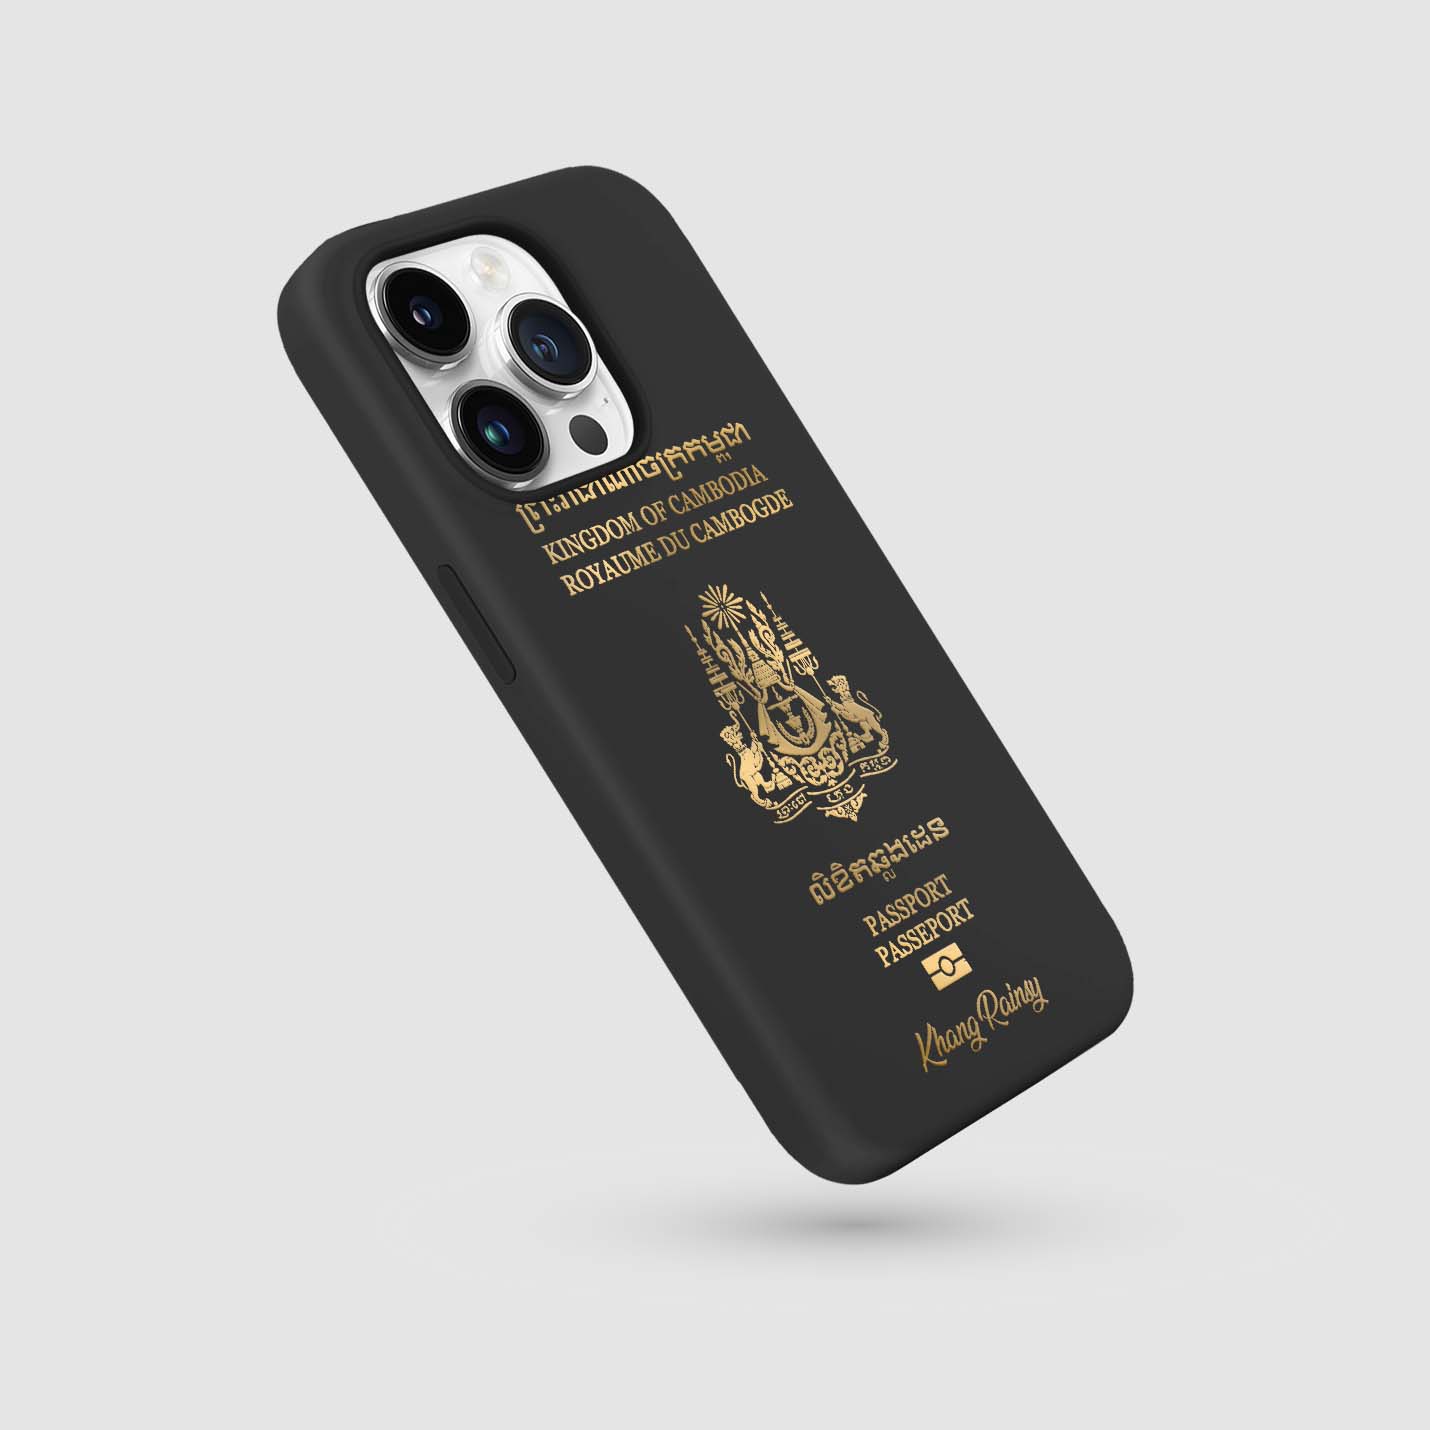 Handyhüllen mit Reisepass - Kambodscha - 1instaphone